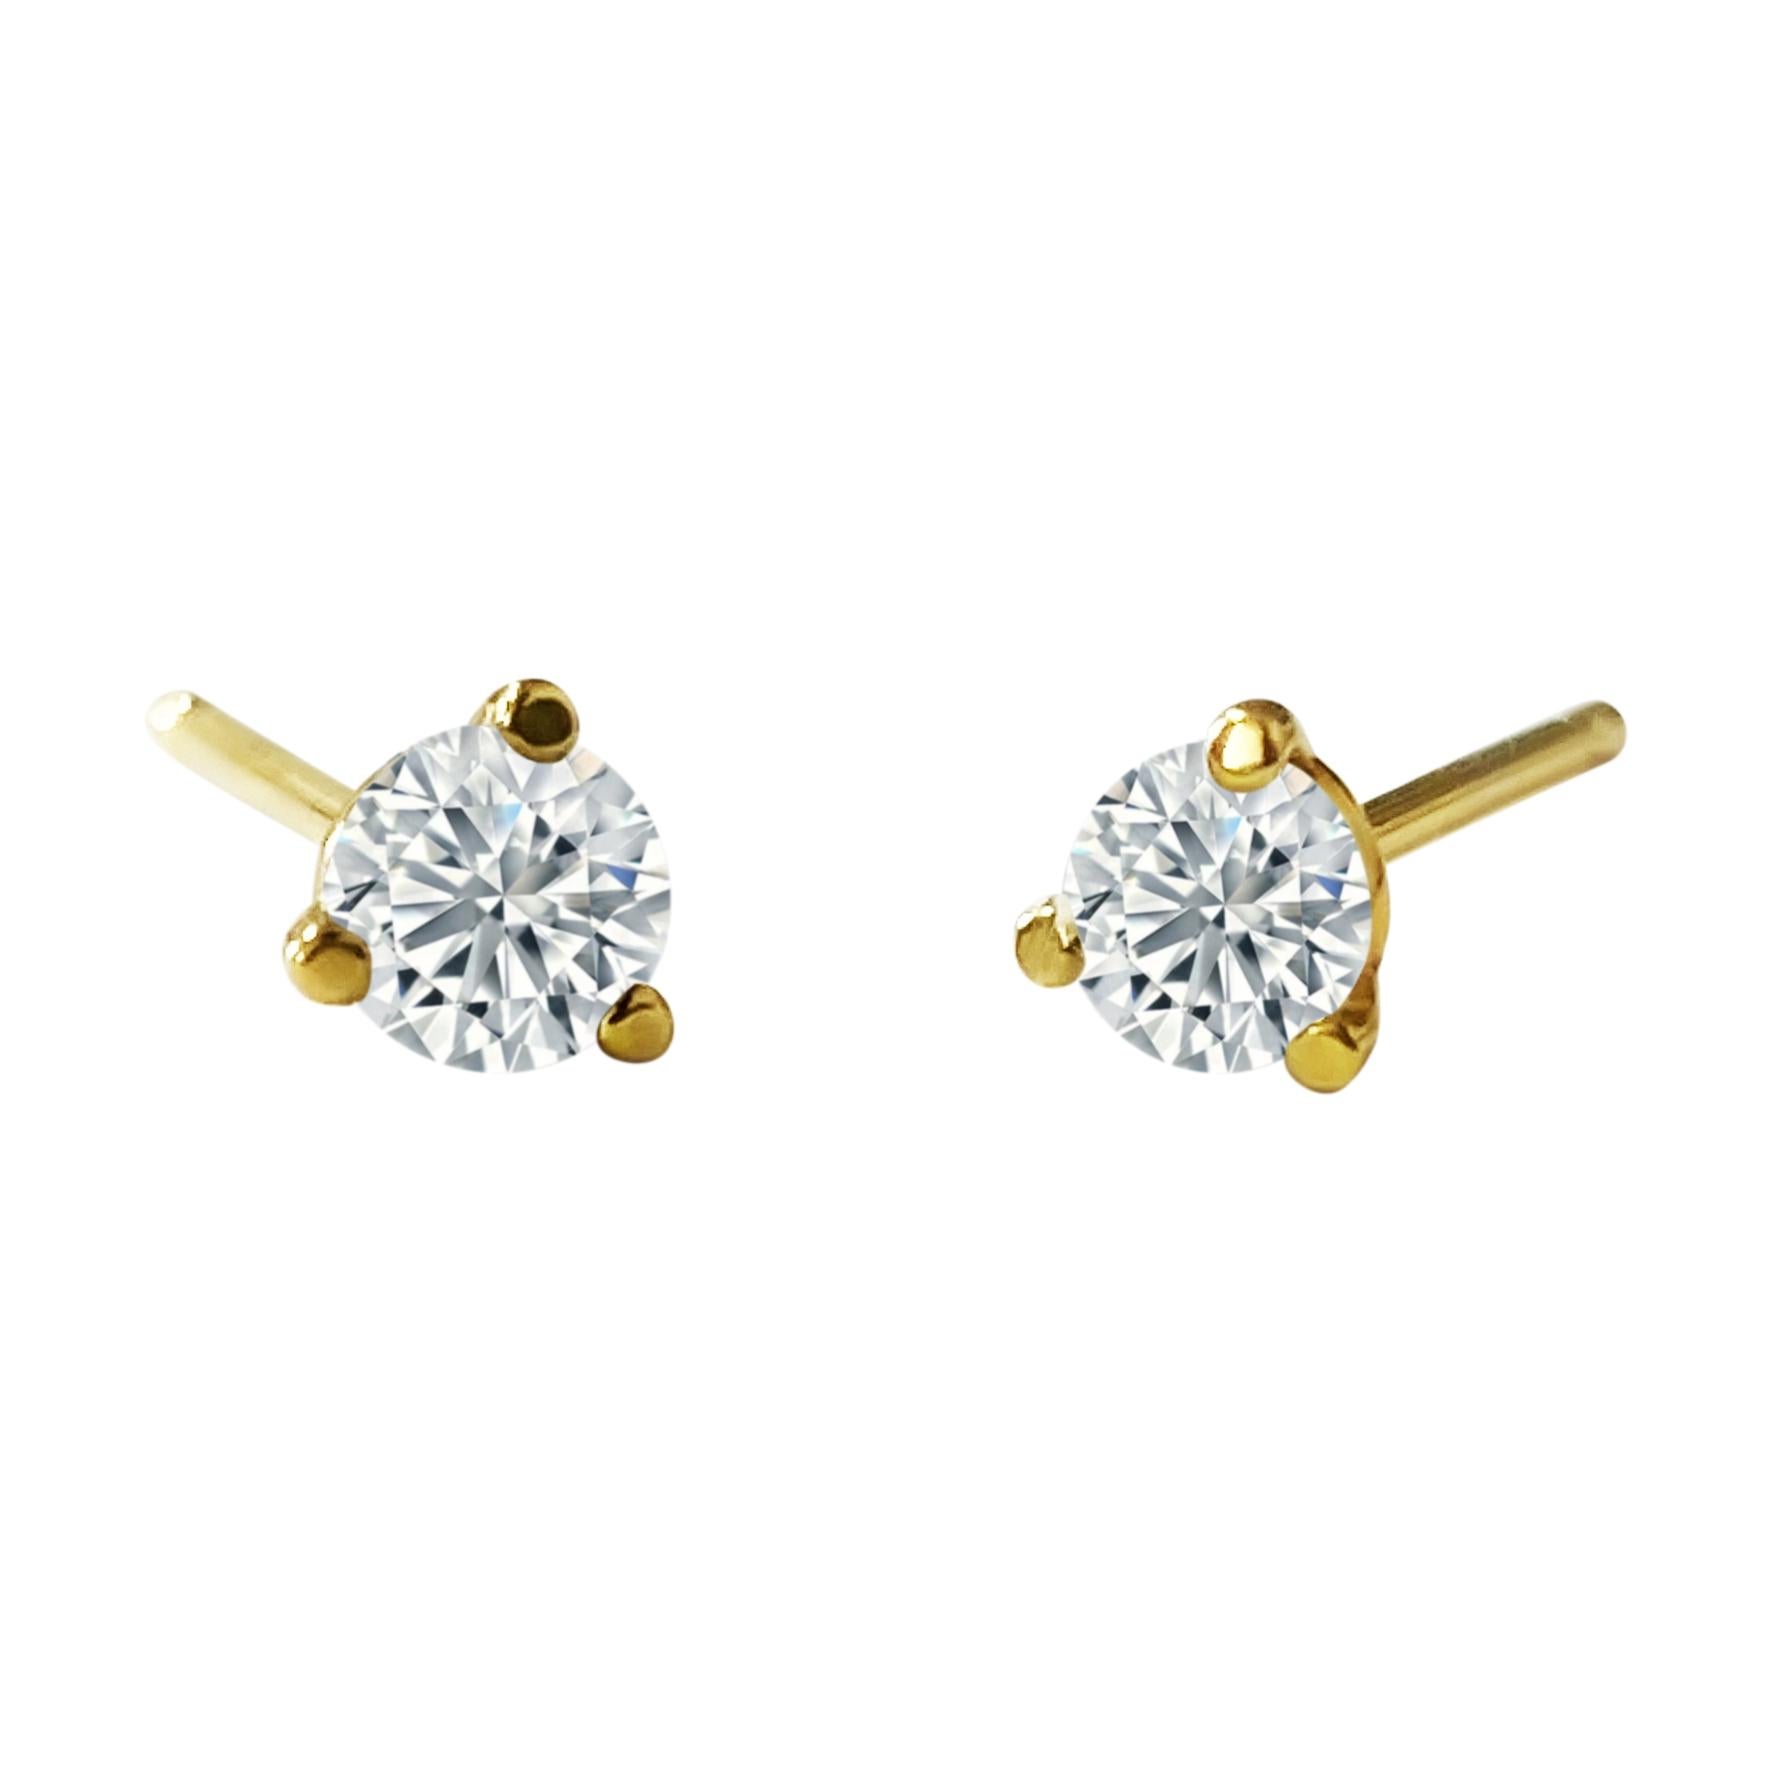 Fabriquées en or jaune 14k, ces boucles d'oreilles classiques en diamant de style Martini sont ornées de 0,30 carats de diamants ronds de taille brillant de couleur G-H et de pureté I2-I3. Parfait pour ajouter de l'élégance à n'importe quel